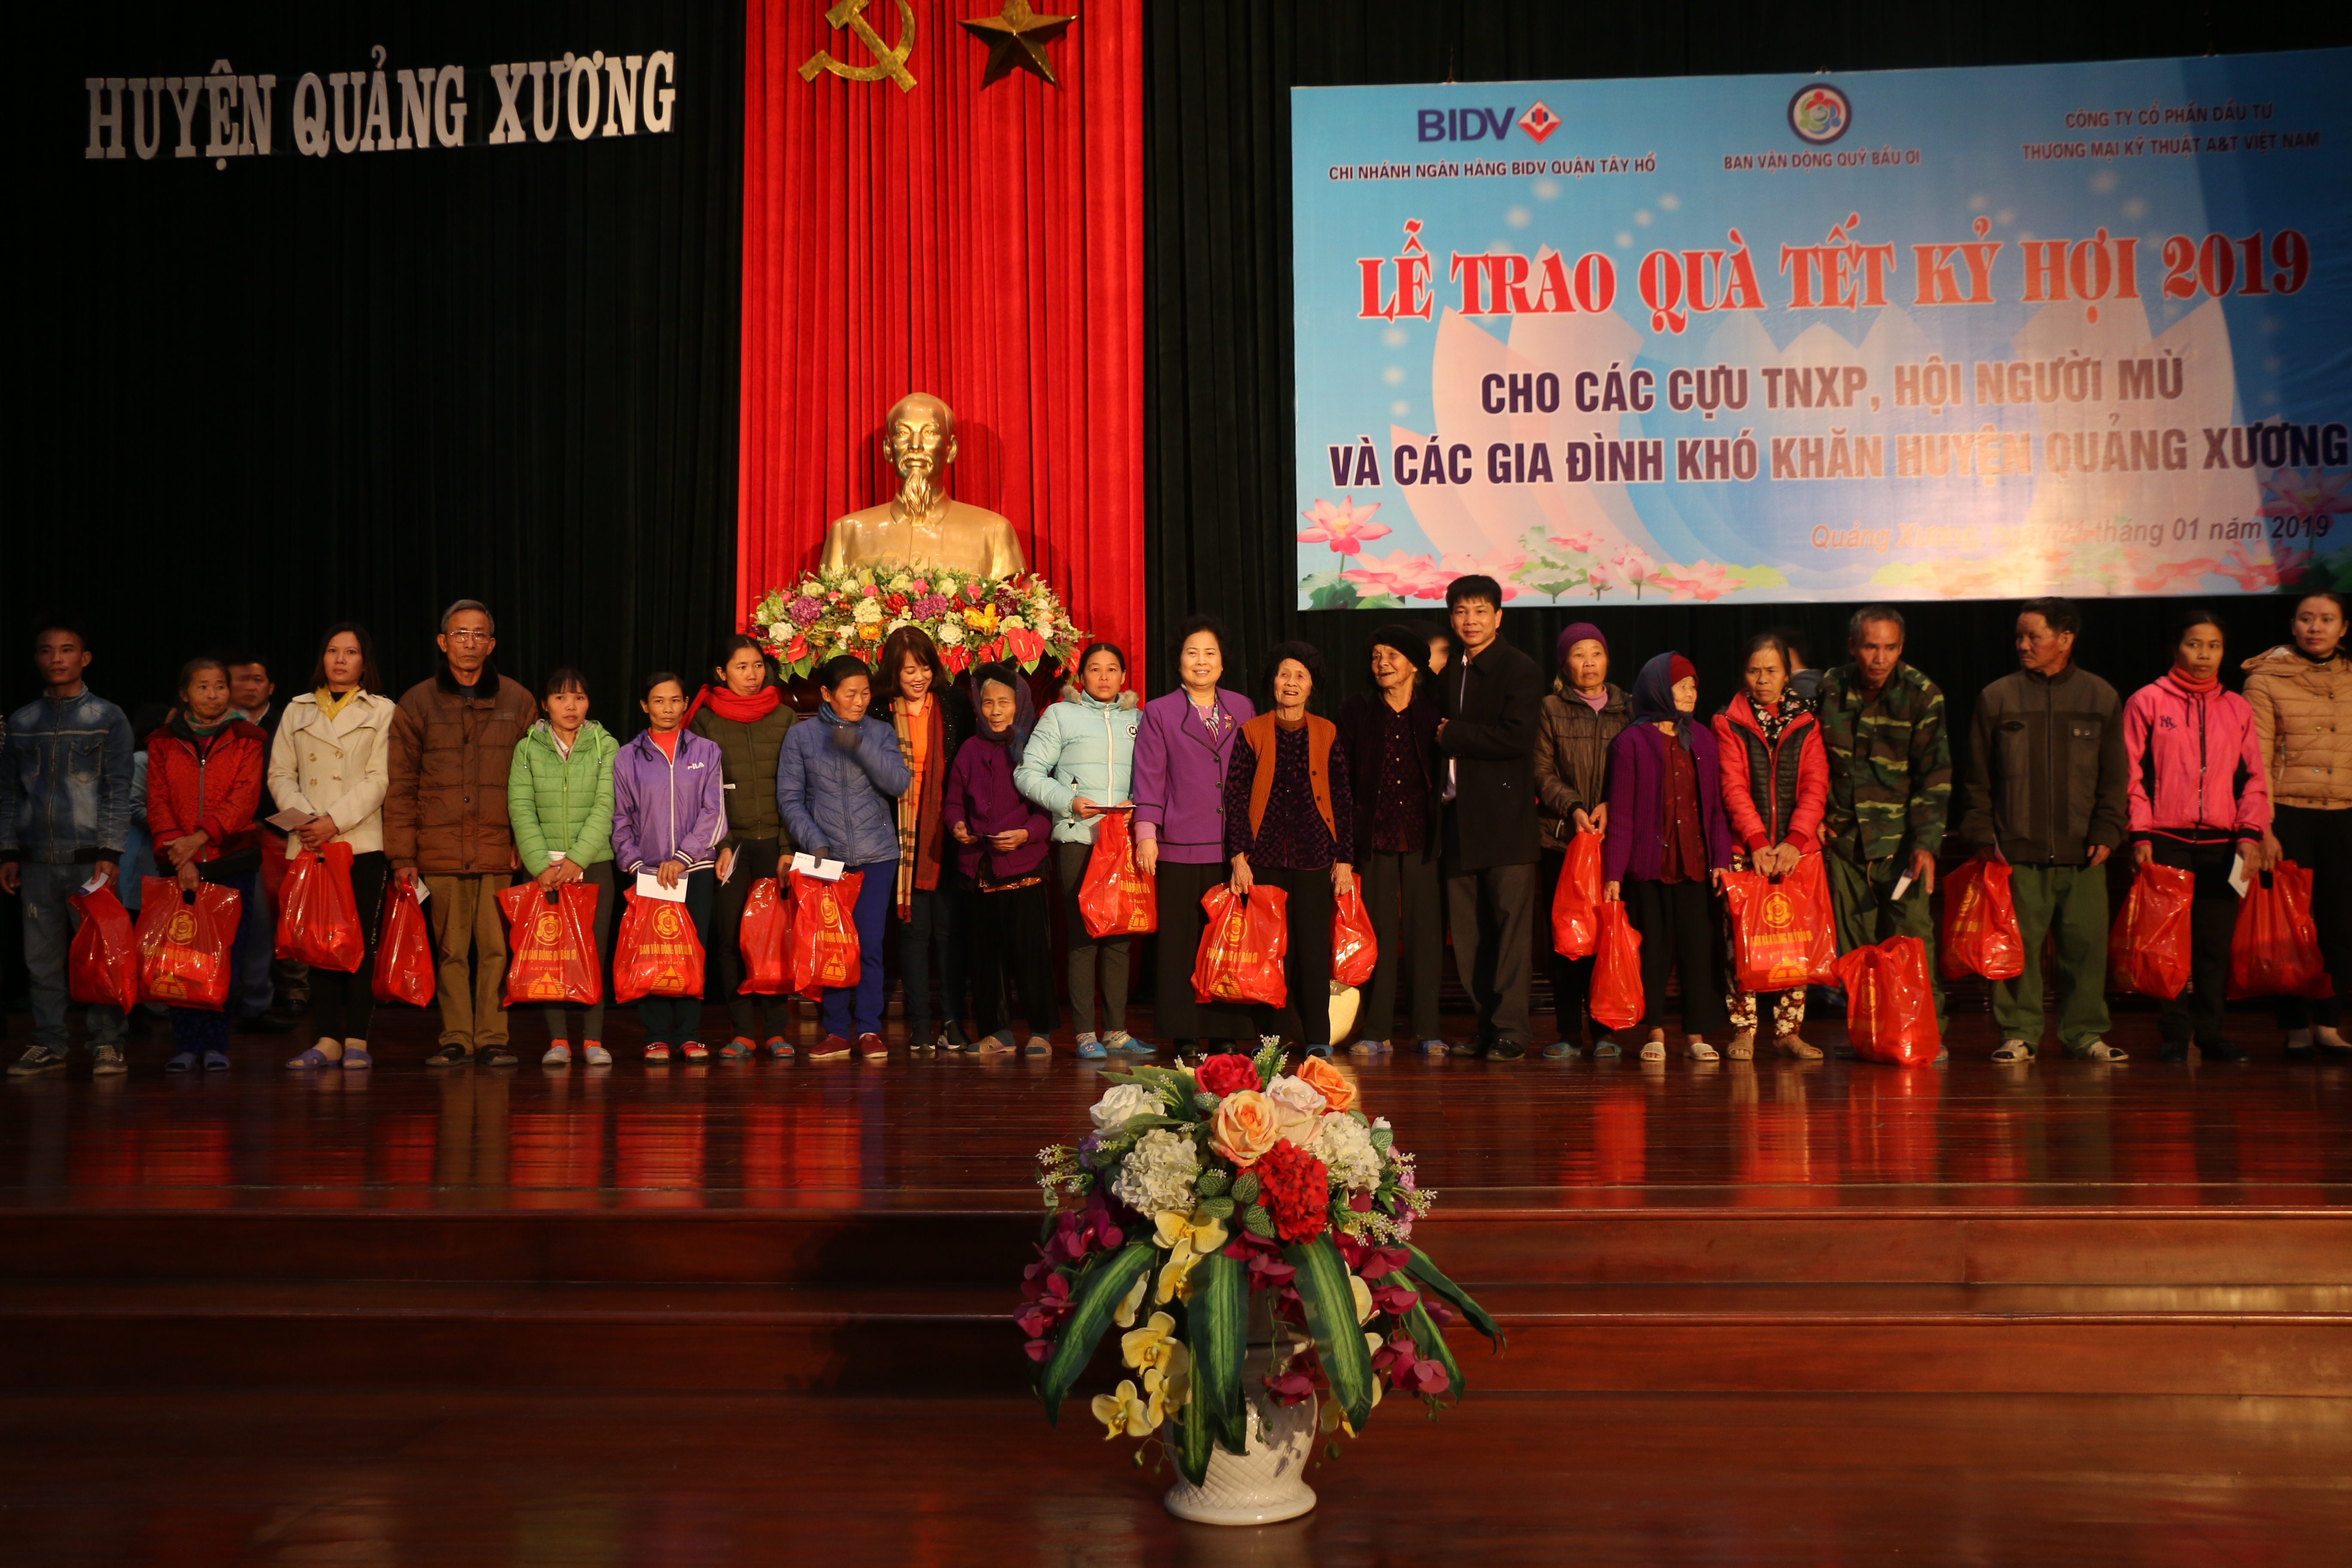 Trao quà Tết cho cựu thanh niên xung phong, hội người mù và các gia đình khó khăn tại huyện Quảng Xương